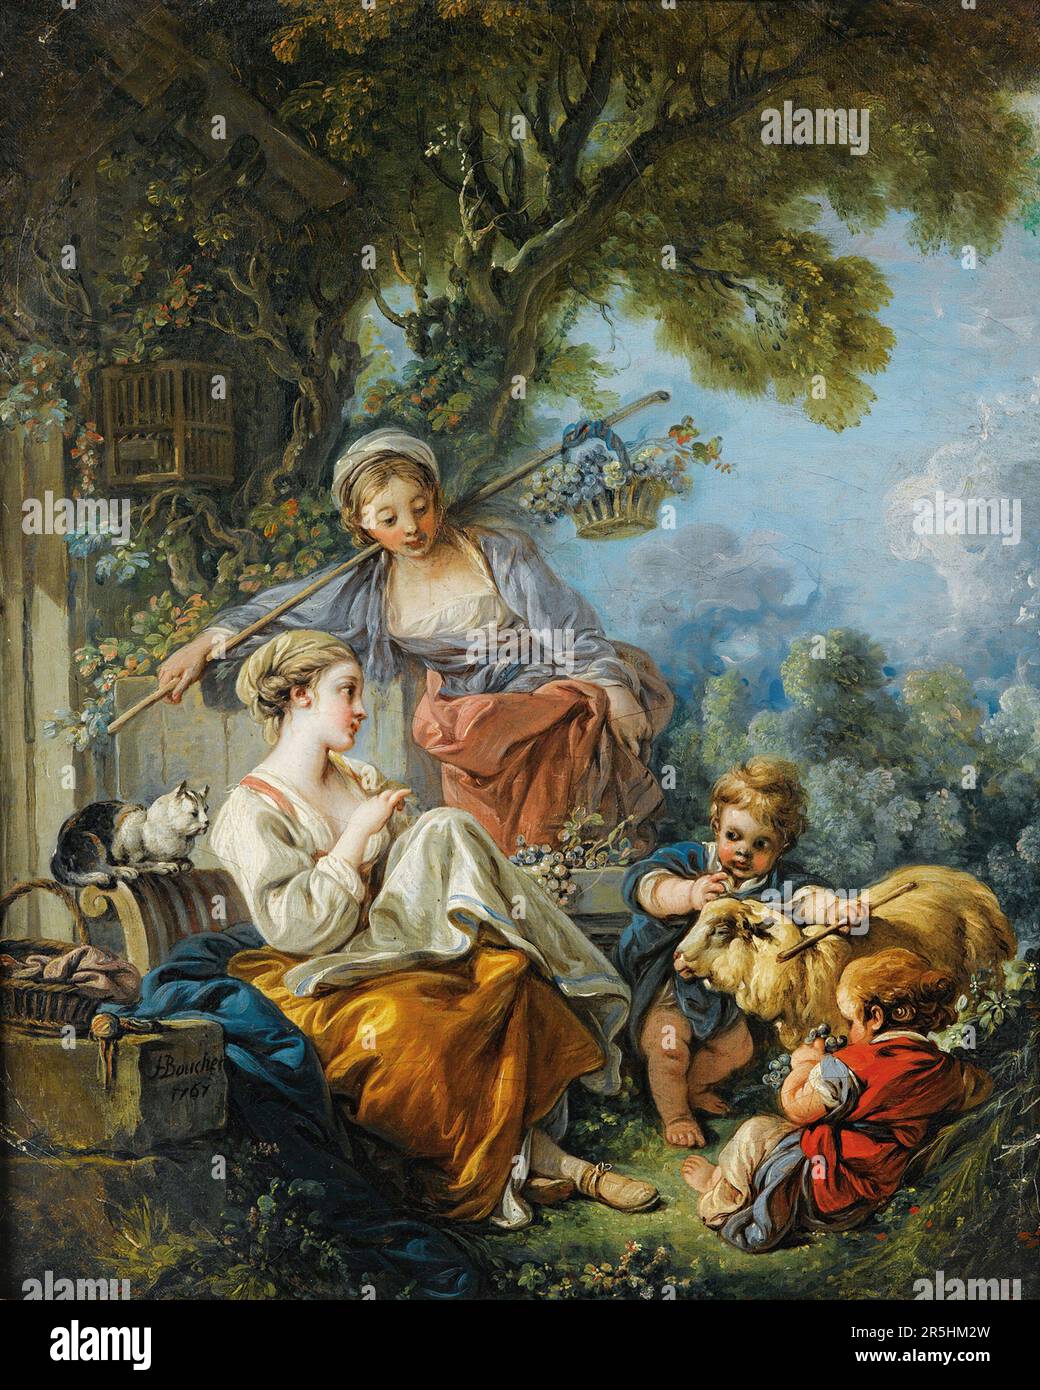 1767 von Francois Bouchard gemalte Pastoralszene. Obwohl heute kaum bekannt, war Francois Boucher einer der berühmtesten Maler des 18. Jahrhunderts in Frankreich. Er malte klassische Themen im Barock- und Rokoko-Stil. Seine Schirmherrin war Madame de Pompadour, und sein Werk war so beliebt, dass er schließlich Premier Peintre du ROI (erster Maler des Königs) wurde, ein angesehener Gerichtsstand im Antiker-Regime. Stockfoto